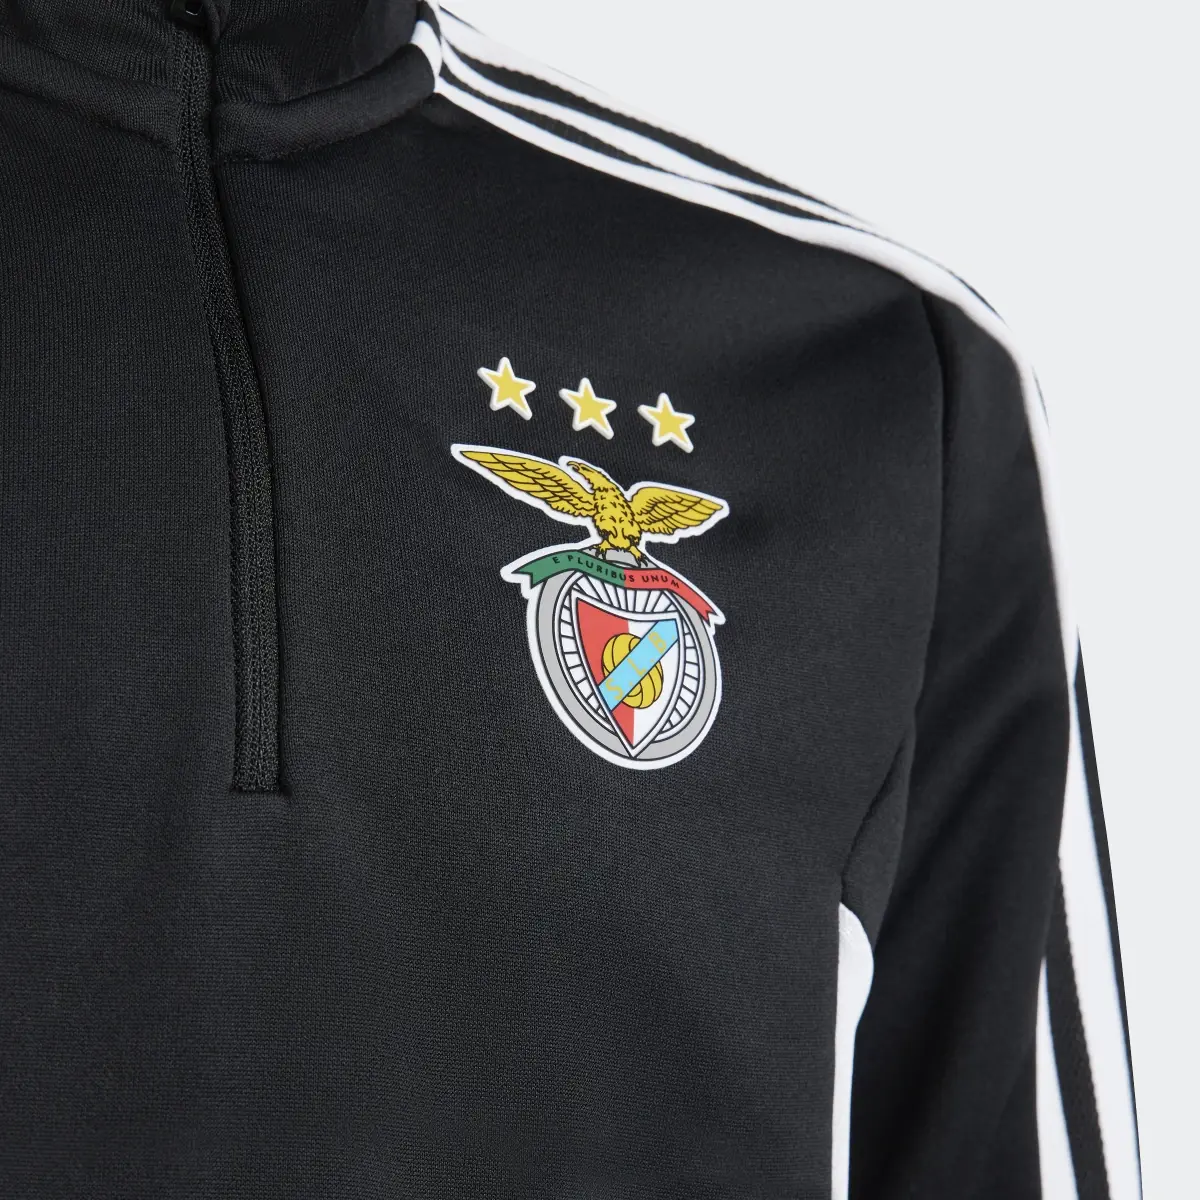 Adidas Camisola de Treino Condivo do Benfica. 3